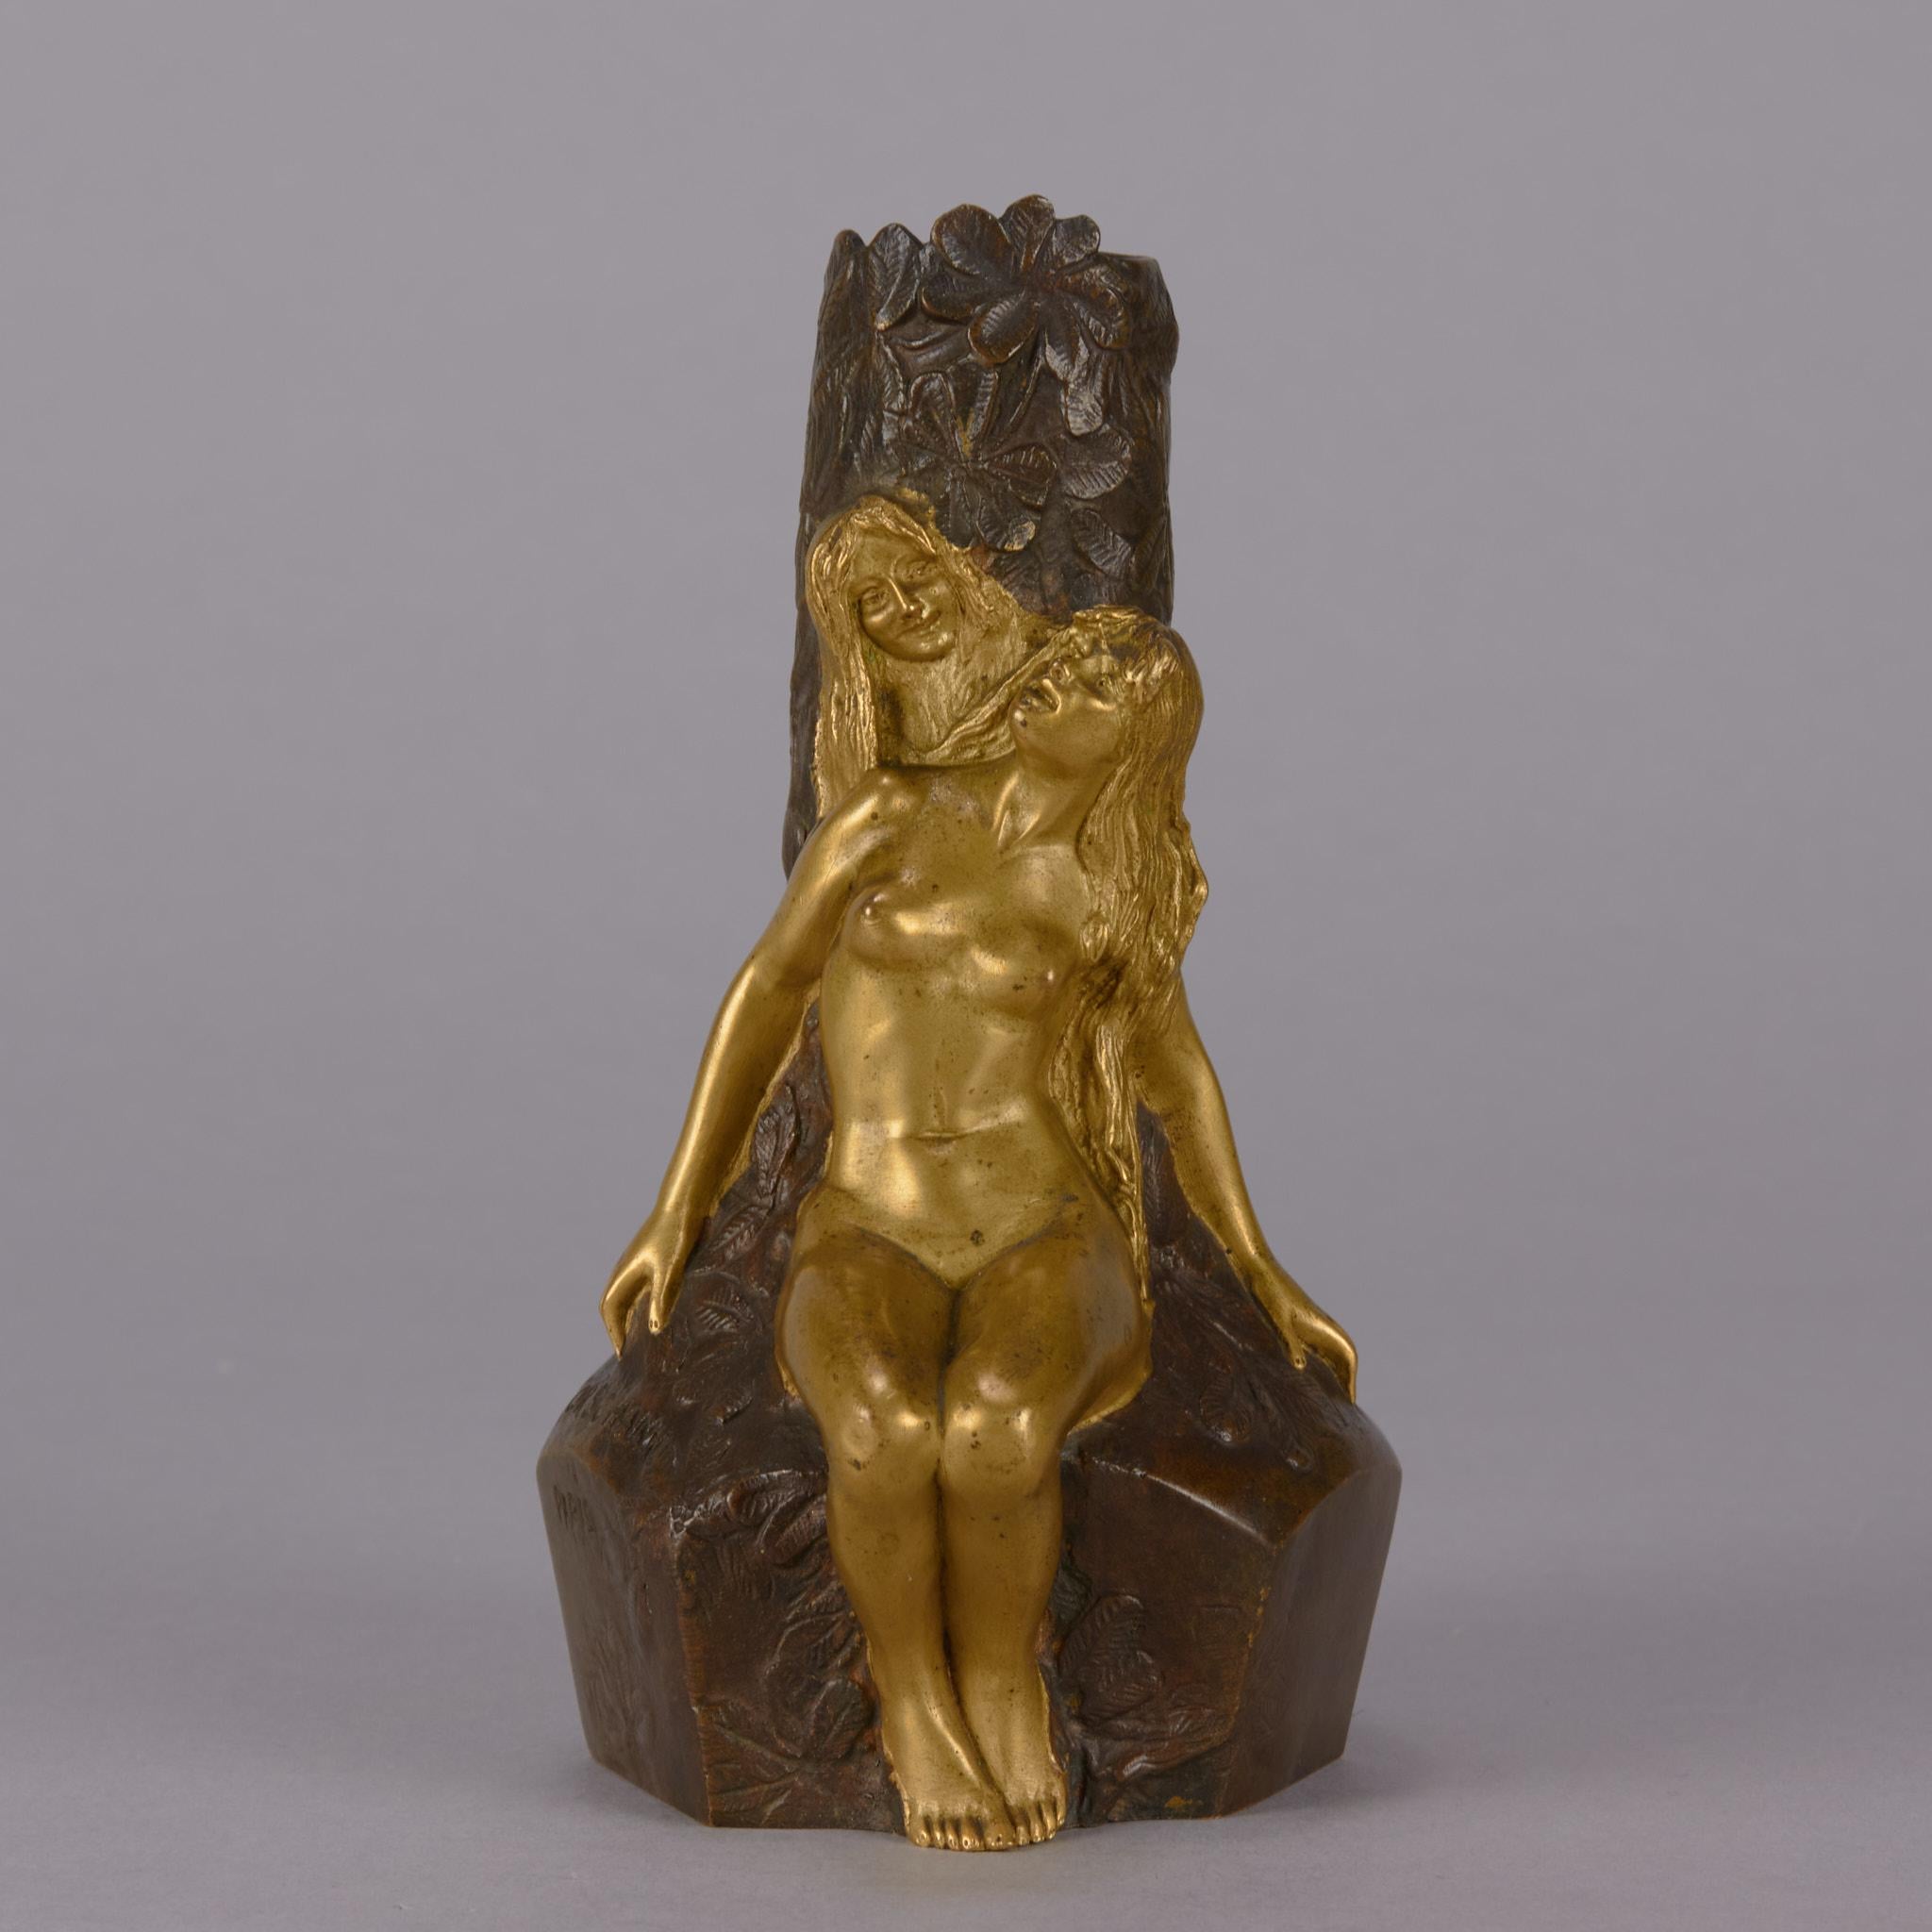 Eine sehr schöne französische Jugendstil-Bronzevase aus dem späten 19. Jahrhundert, verziert mit zwei weiblichen Figuren aus vergoldeter Bronze, die auf einem Baumstumpf sitzen. Die Oberfläche der Vase mit ausgezeichneten Details und sehr schöner